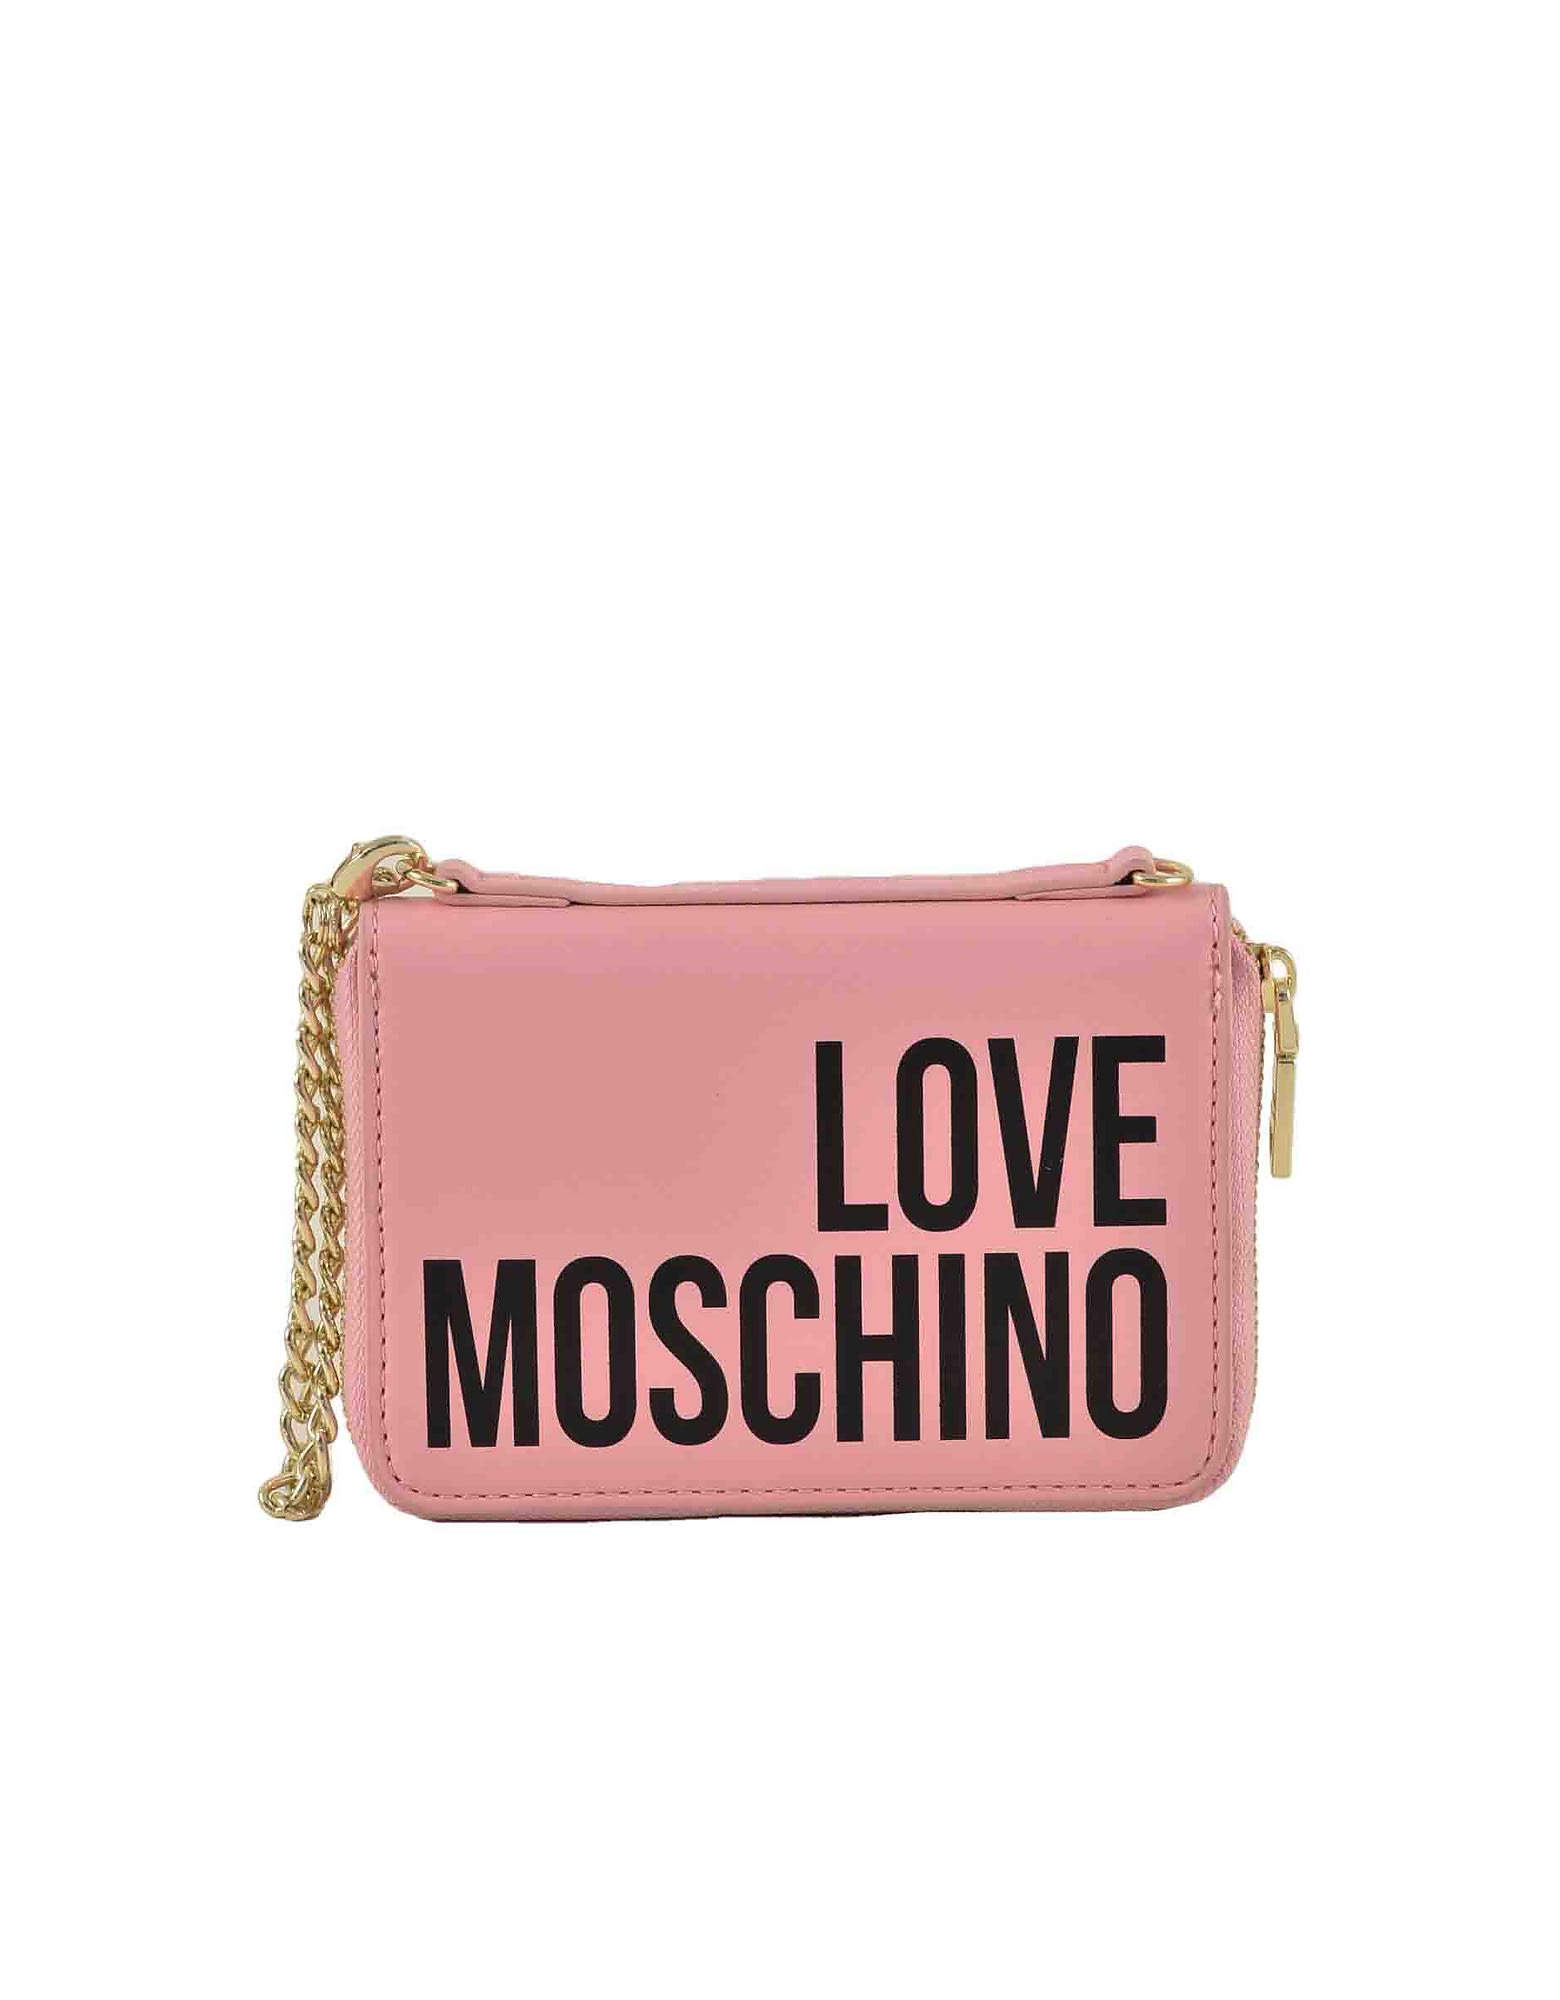 Love Moschino Womens Pink Handbag